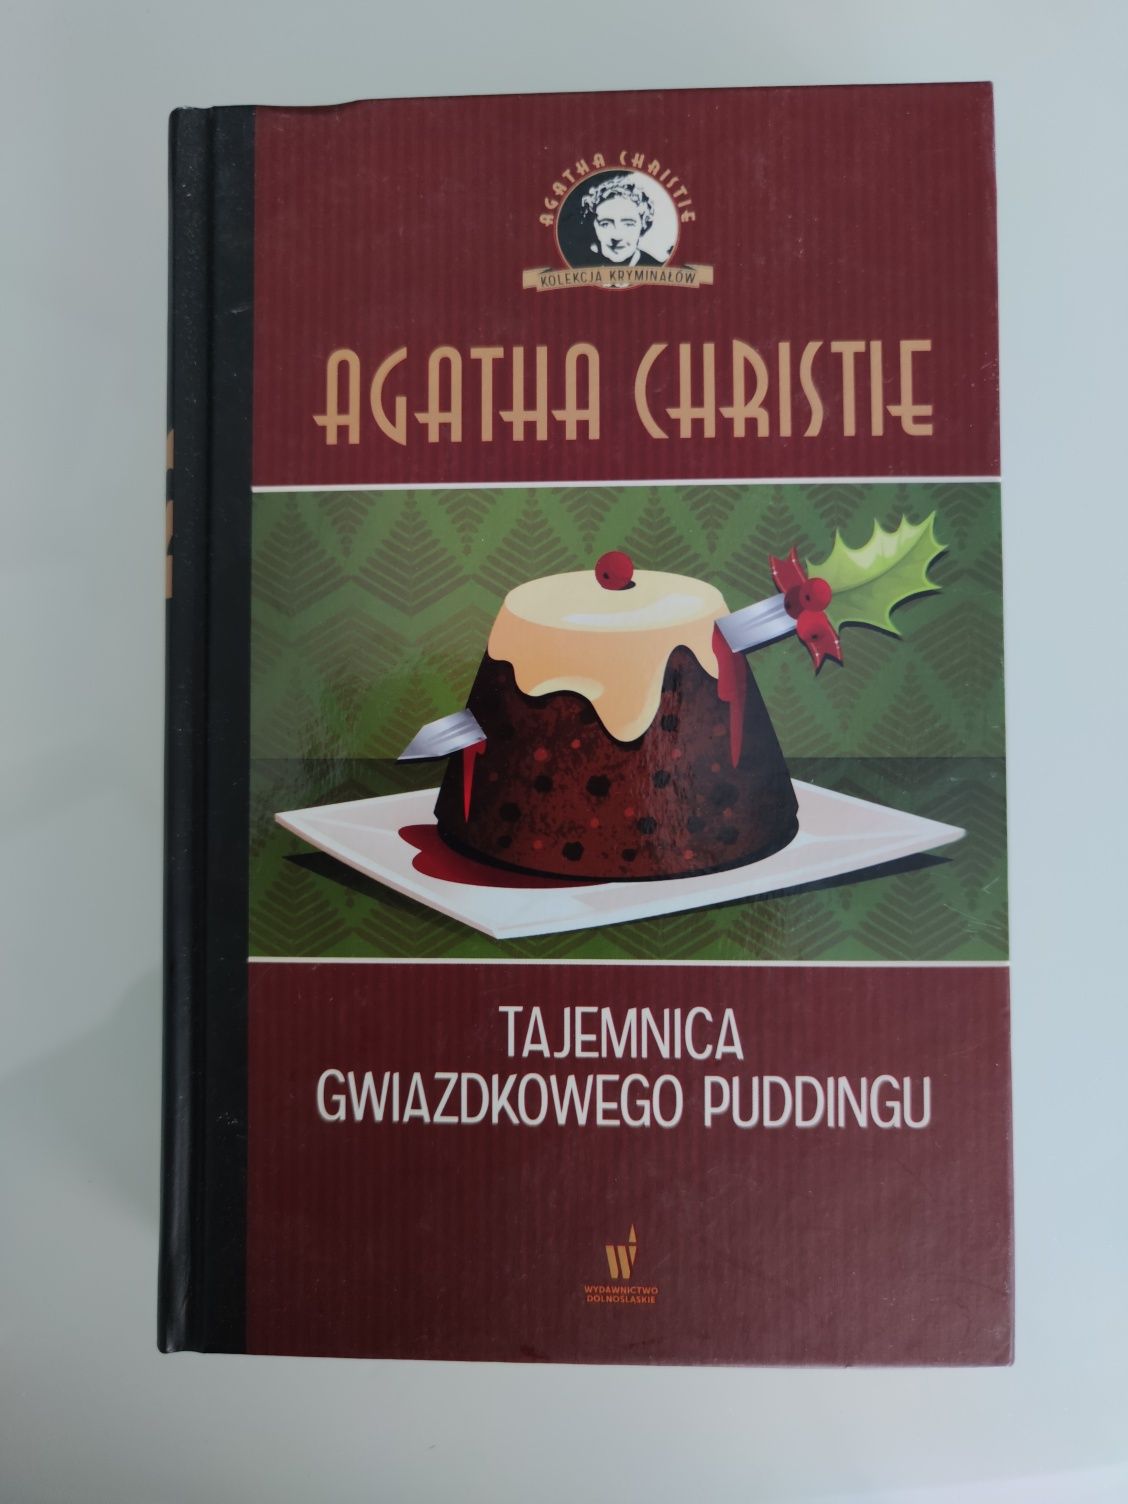 Tajemnica gwiazdkowego puddingu. Agatha Christie.